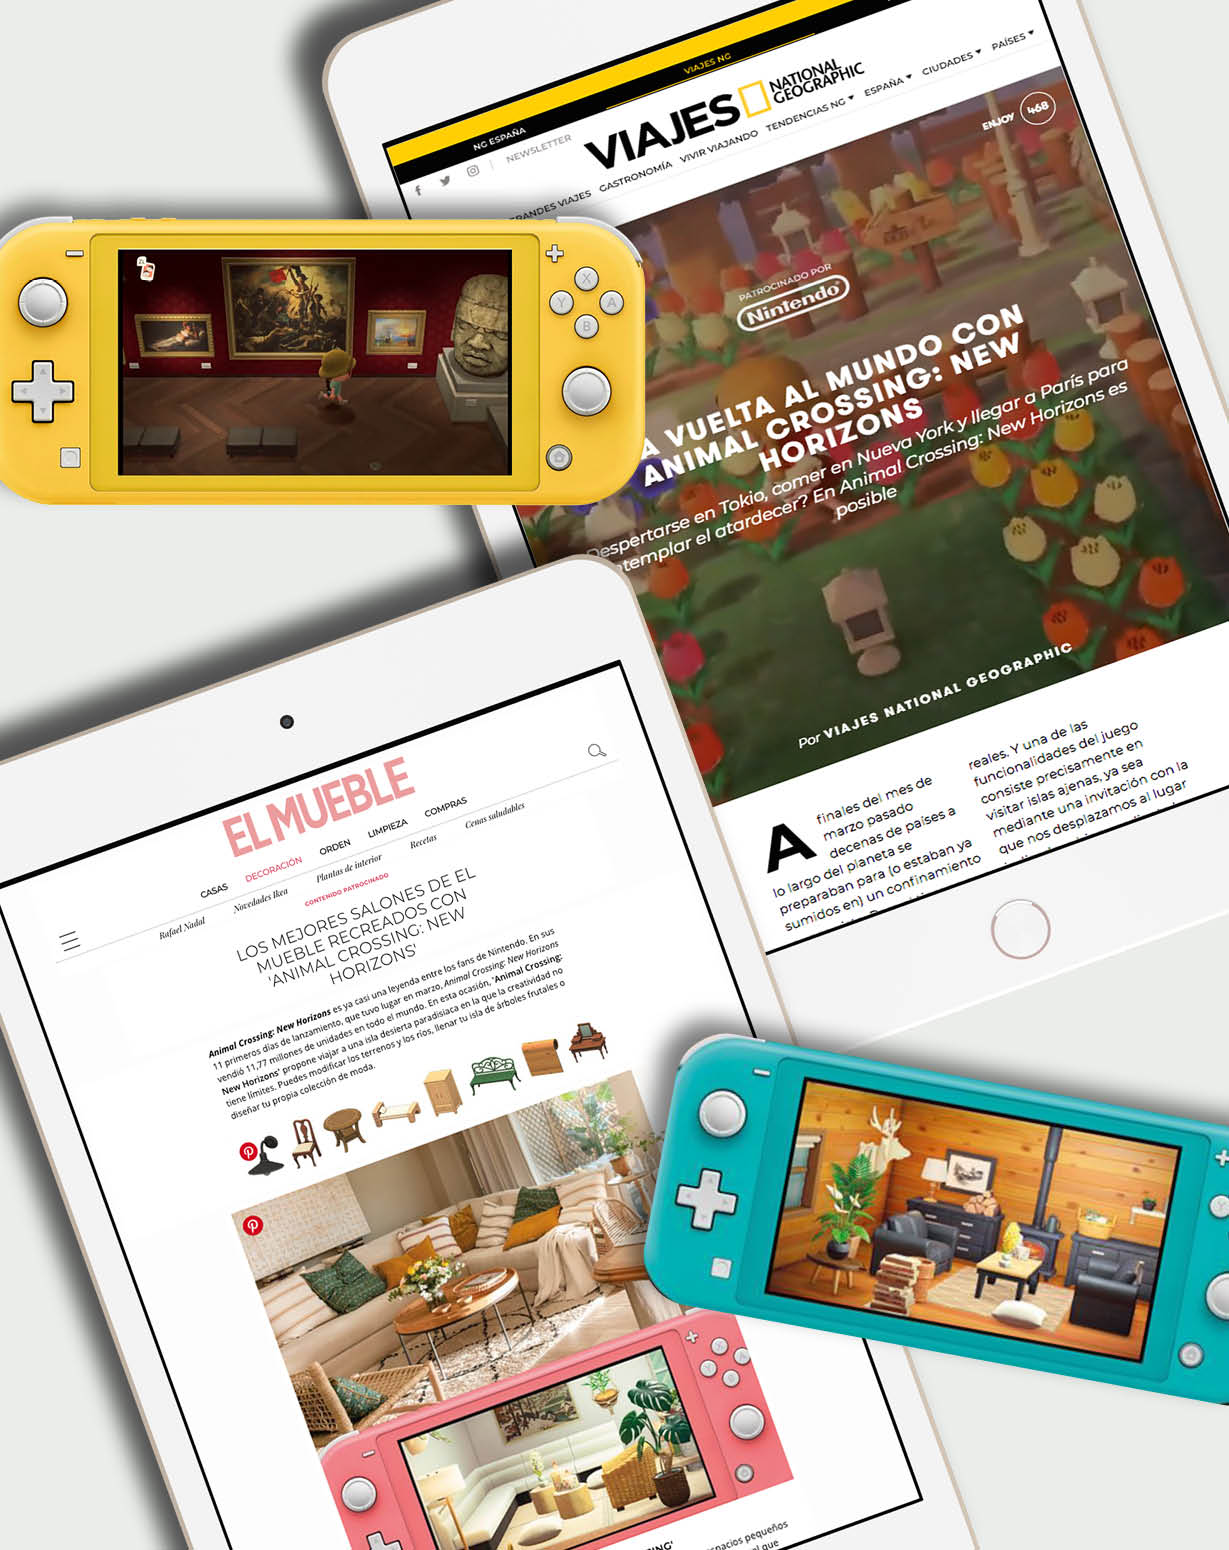 Animal Crossing de Nintendo / El Mueble y Viajes NG / Digital